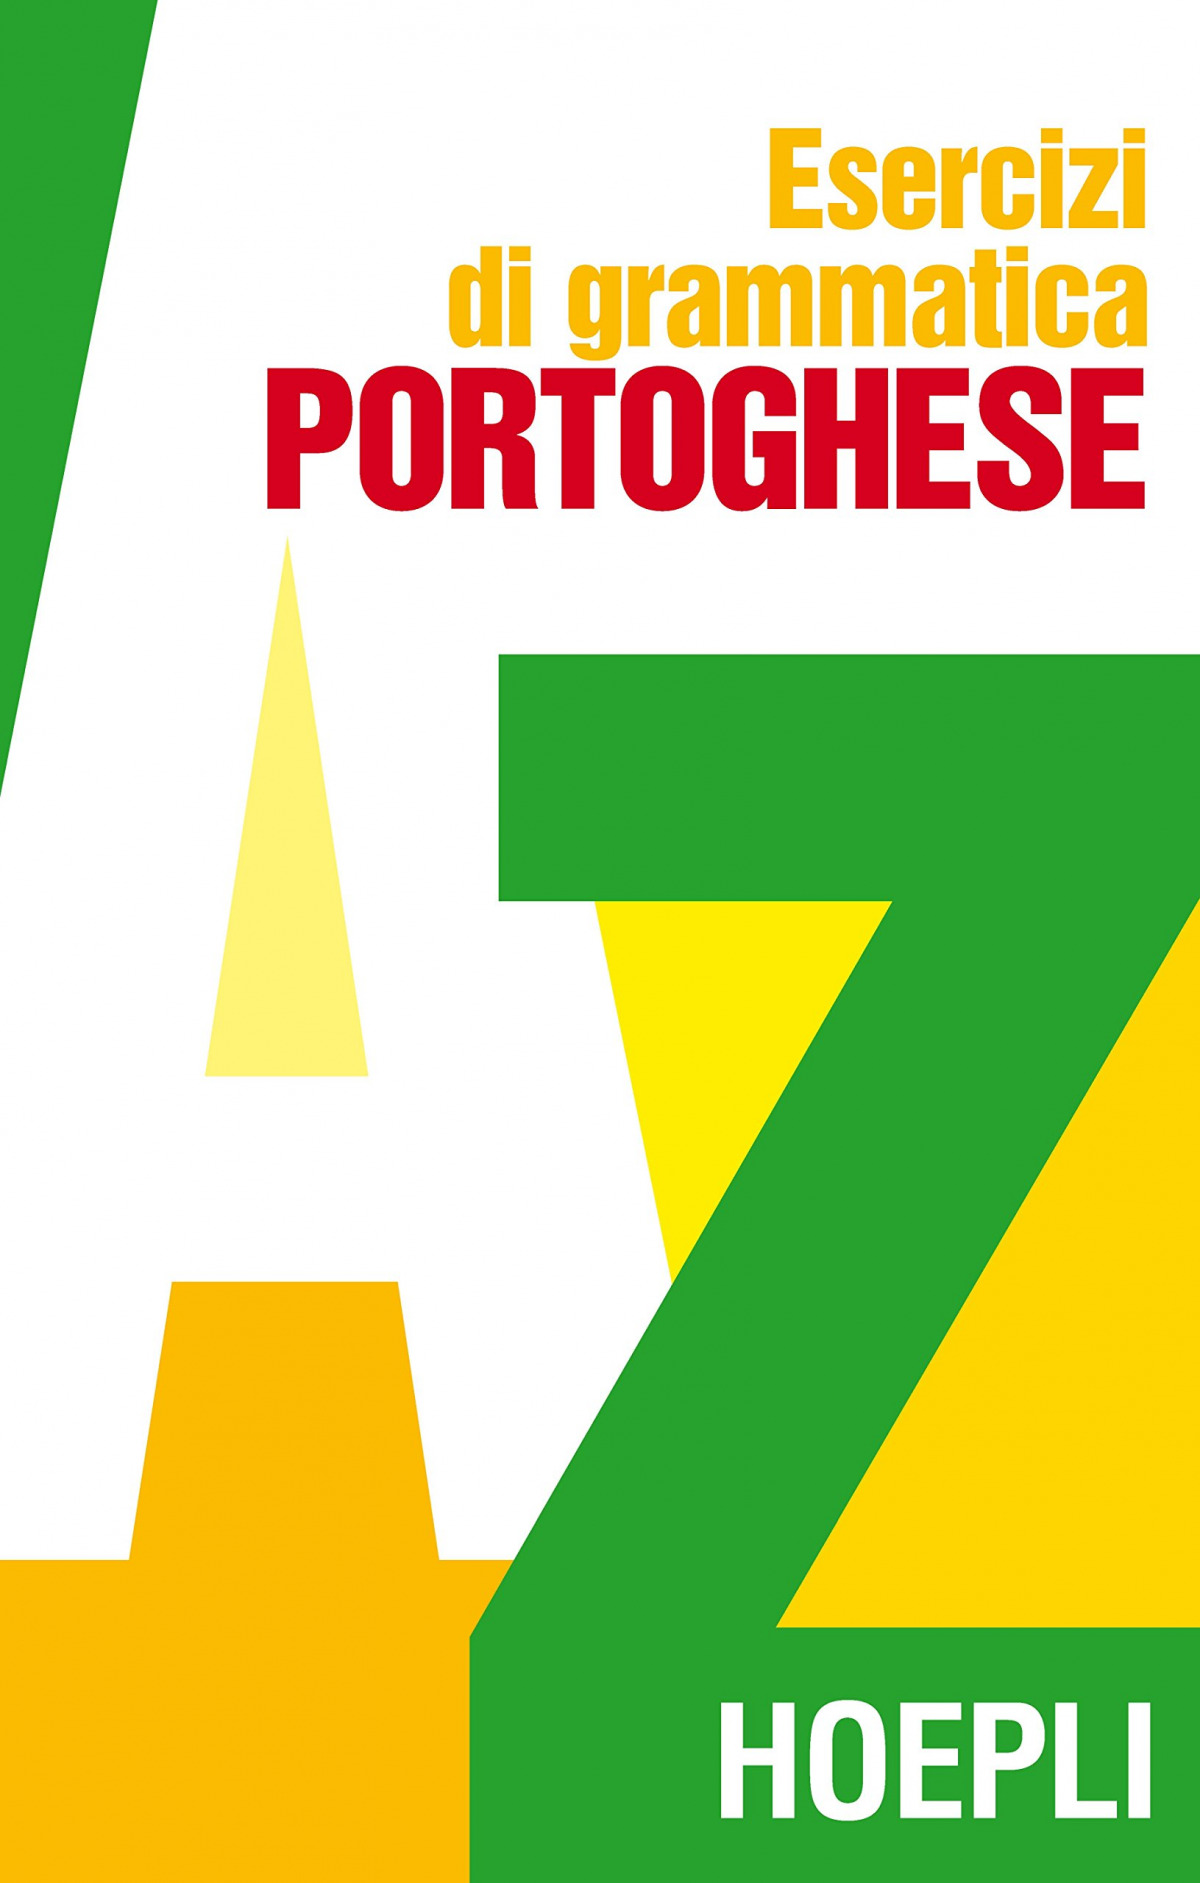 Esercizi di grammatica portoghese - Vv.Aa.